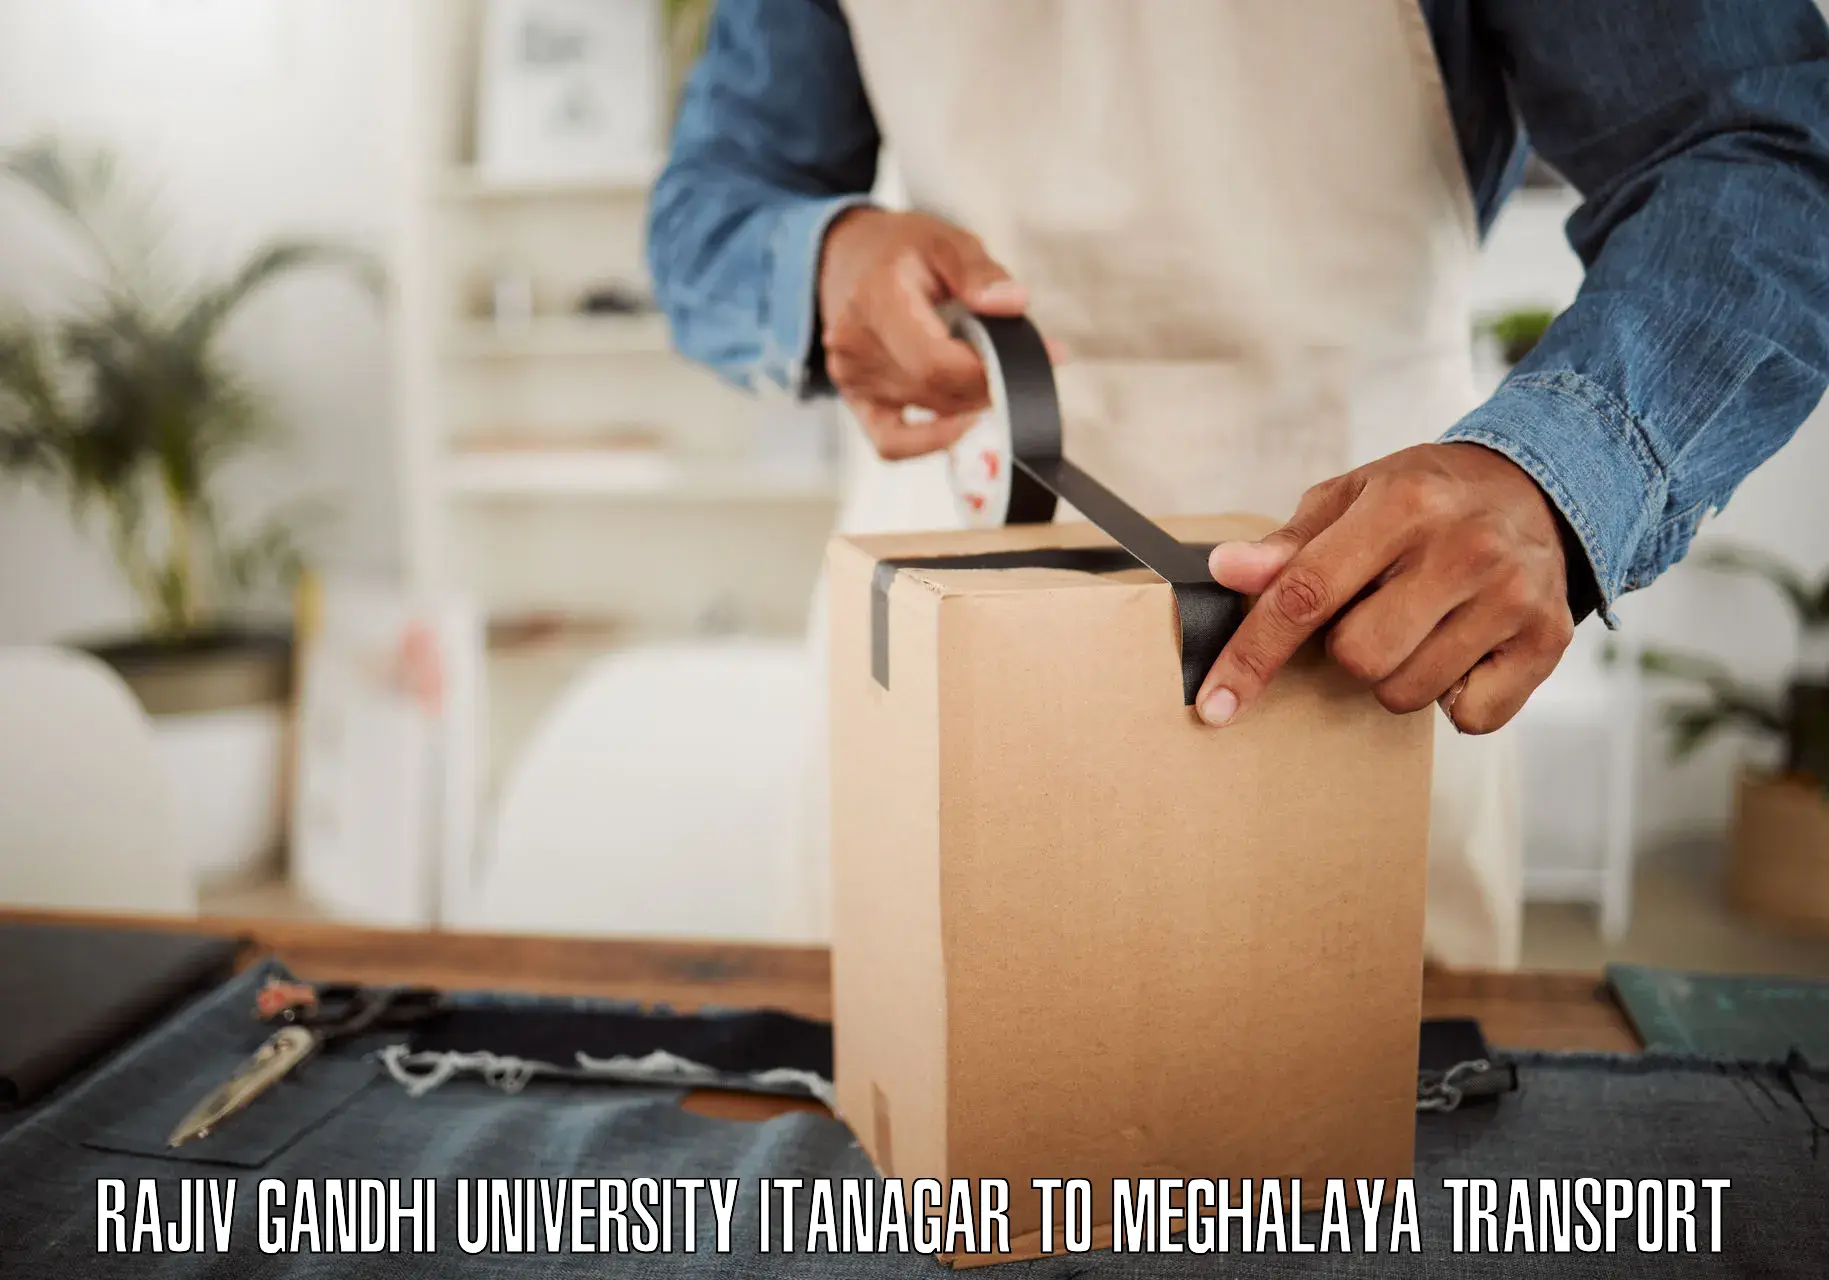 Shipping partner in Rajiv Gandhi University Itanagar to Ri Bhoi